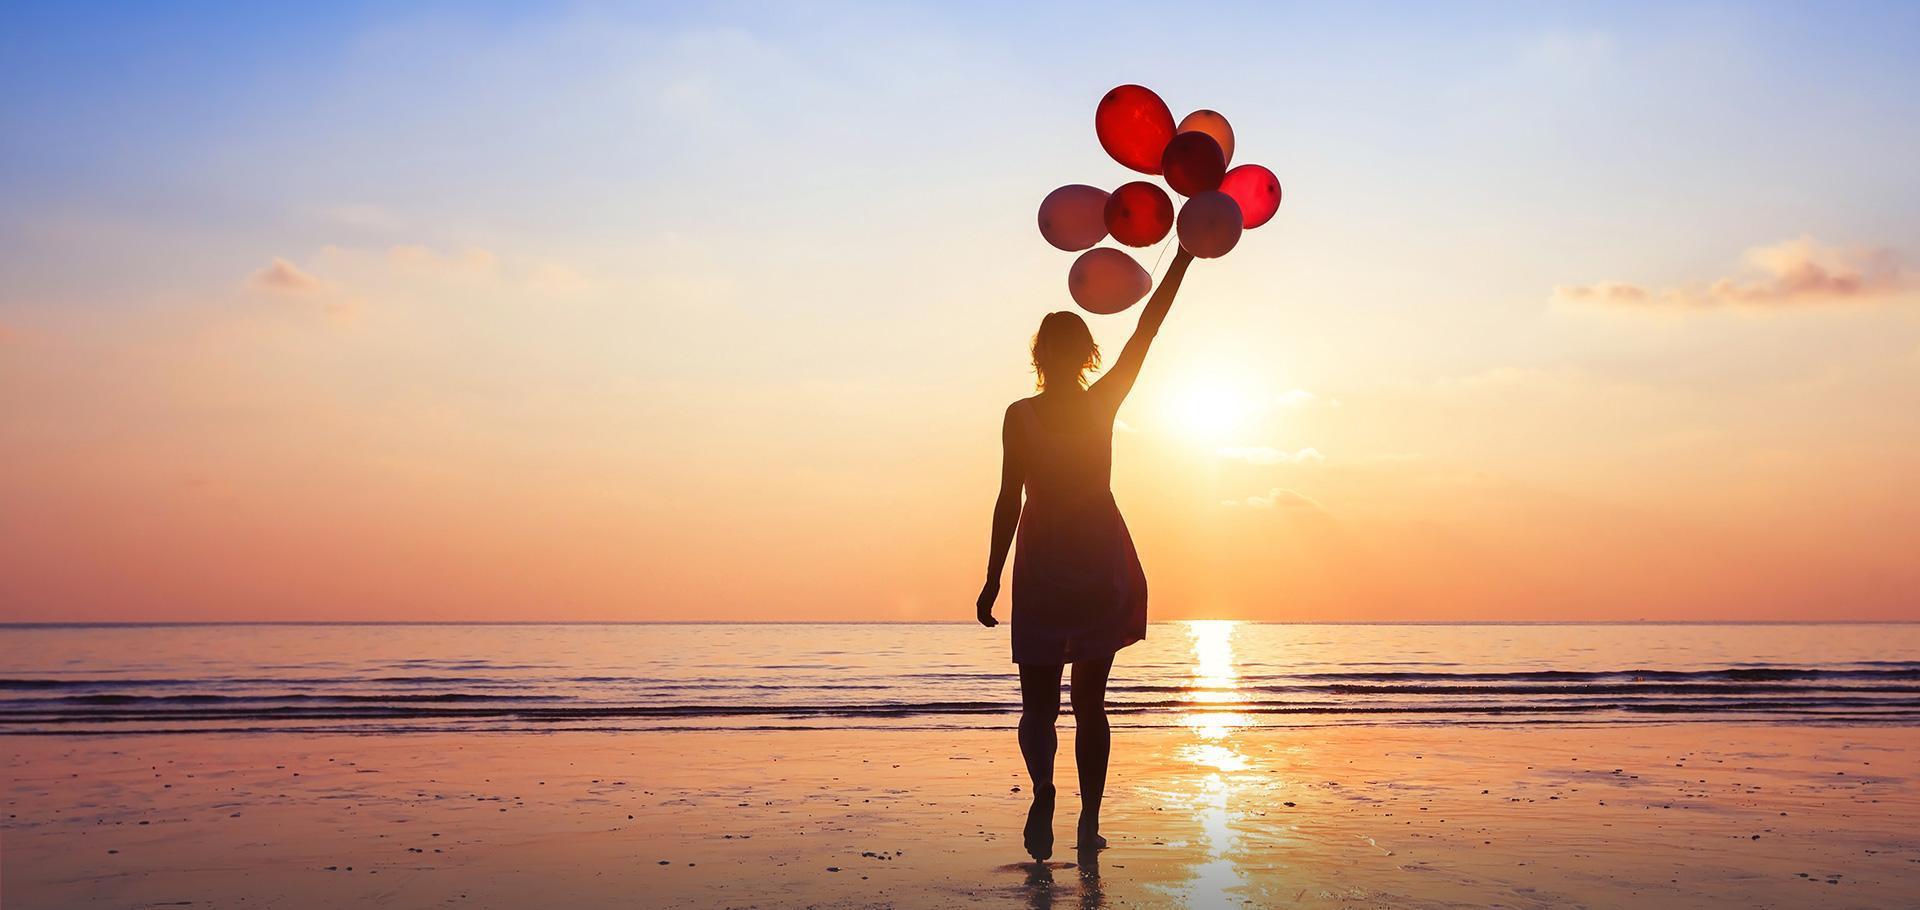 Slajd #1 - kobieta trzymająca balony na plaży